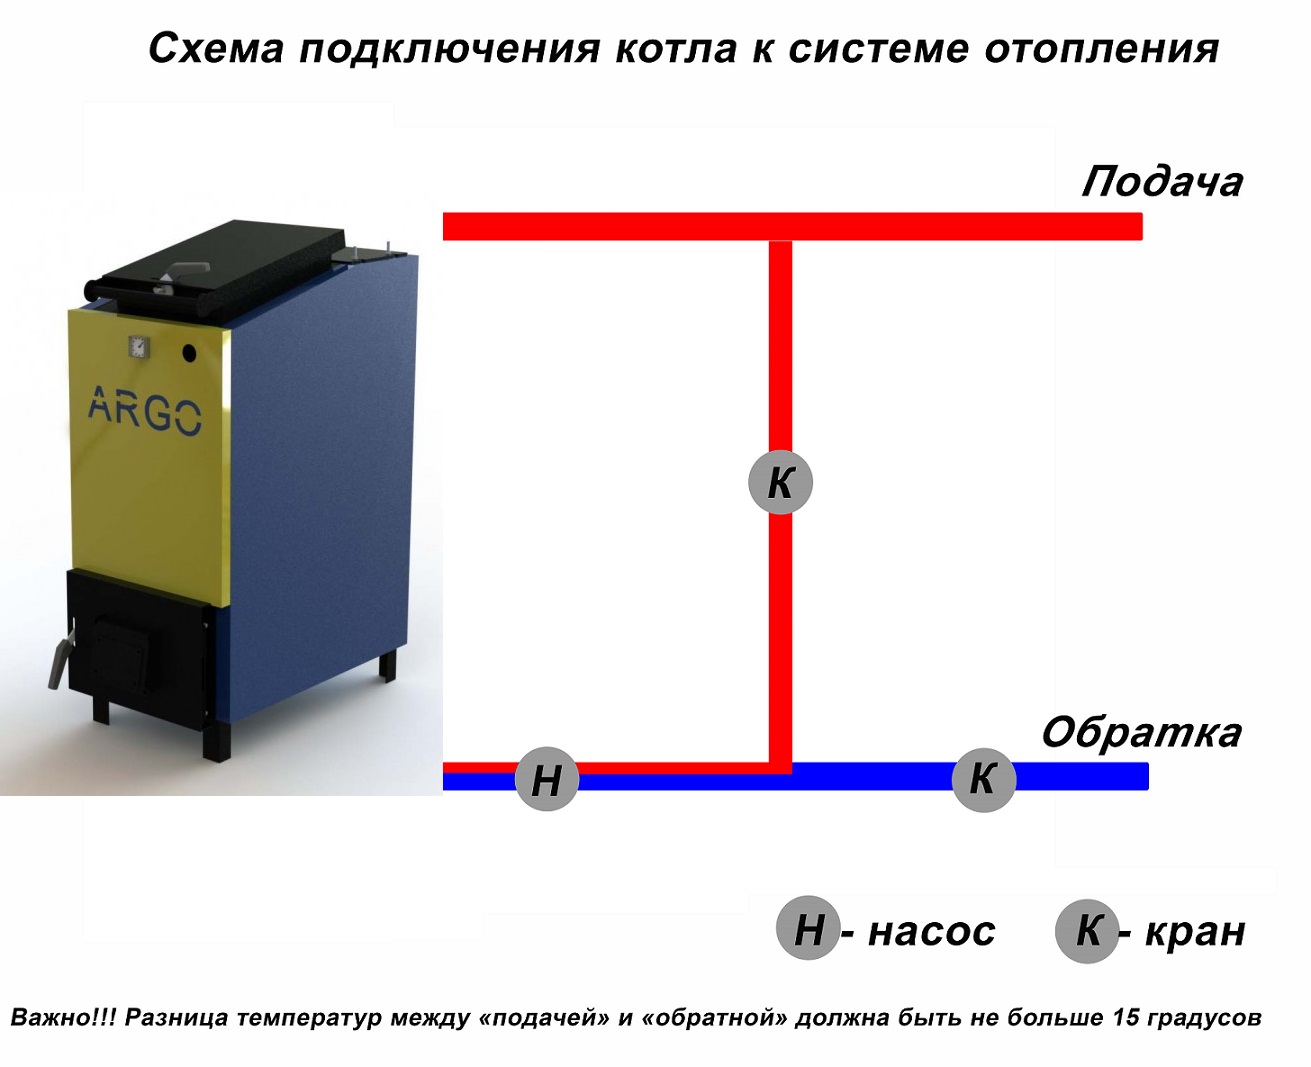 Правильная установка твердотопливного котла в отопительную систему закрытого типа